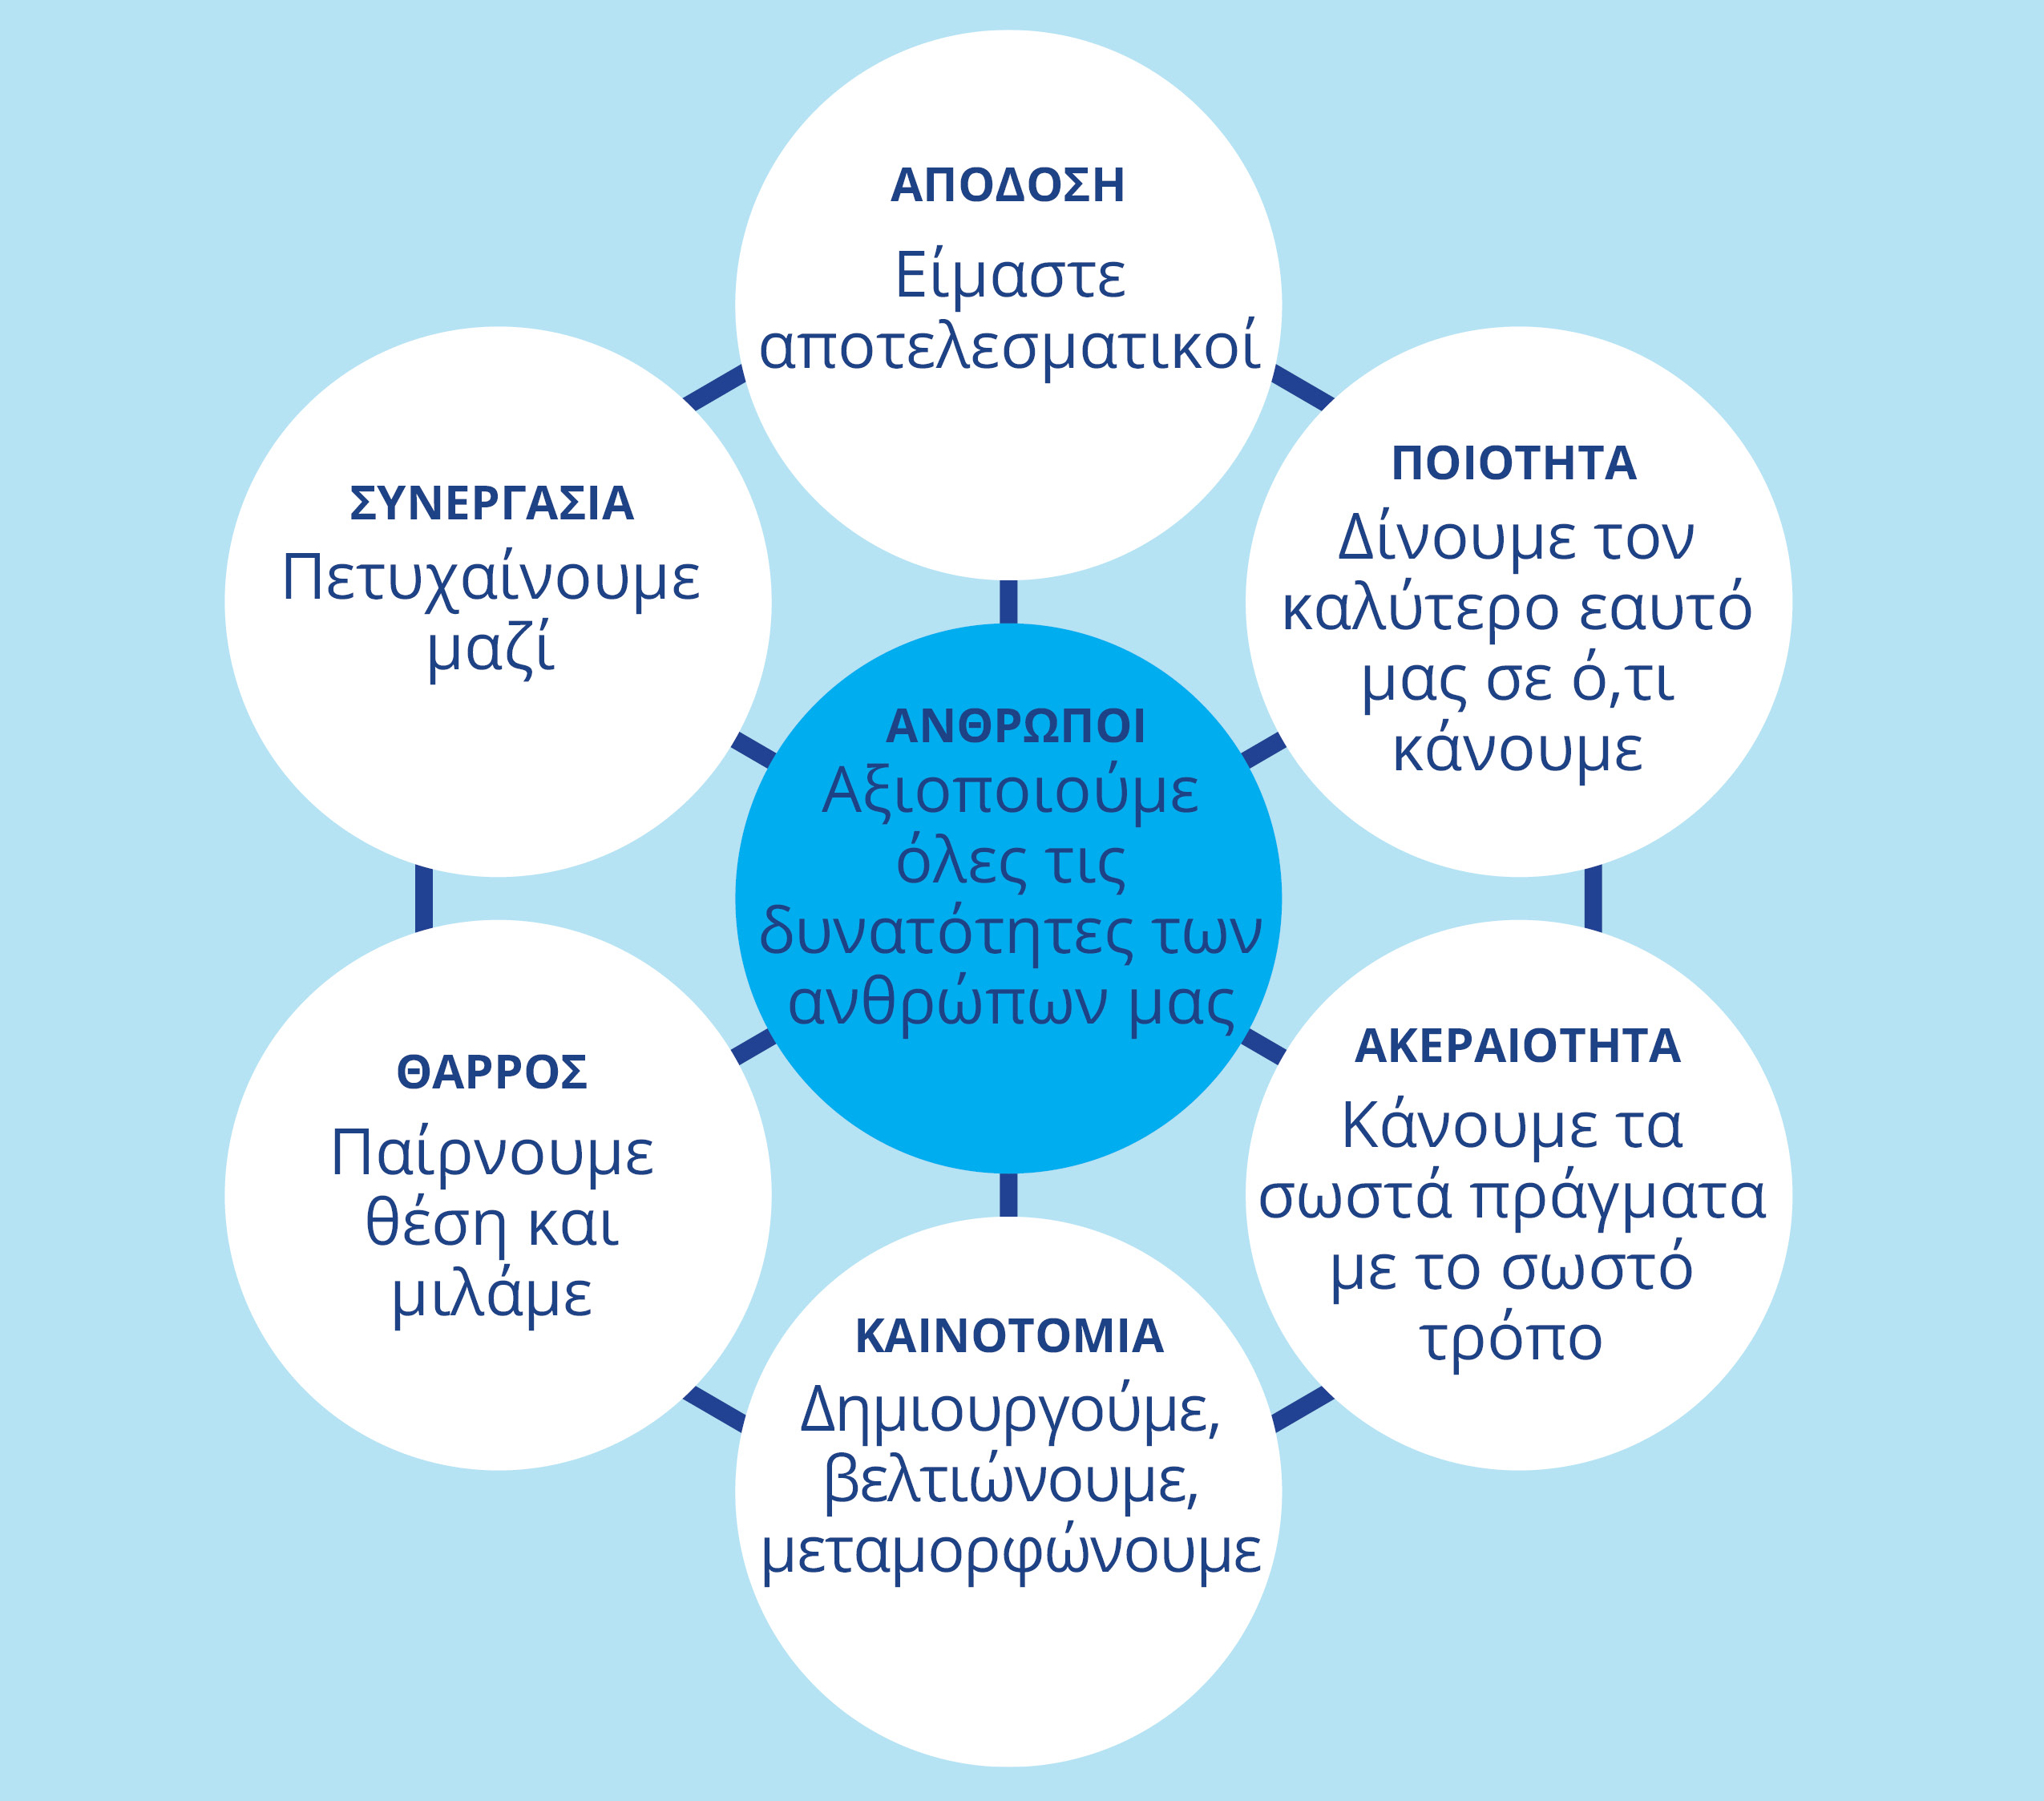 Ένα πληροφοριακό γράφημα κύκλων. Στο κέντρο του βρίσκονται οι Άνθρωποι, οι οποίοι περιβάλλονται από τις ακόλουθες έξι αξίες και μια σύντομη επεξήγηση για την καθεμία.